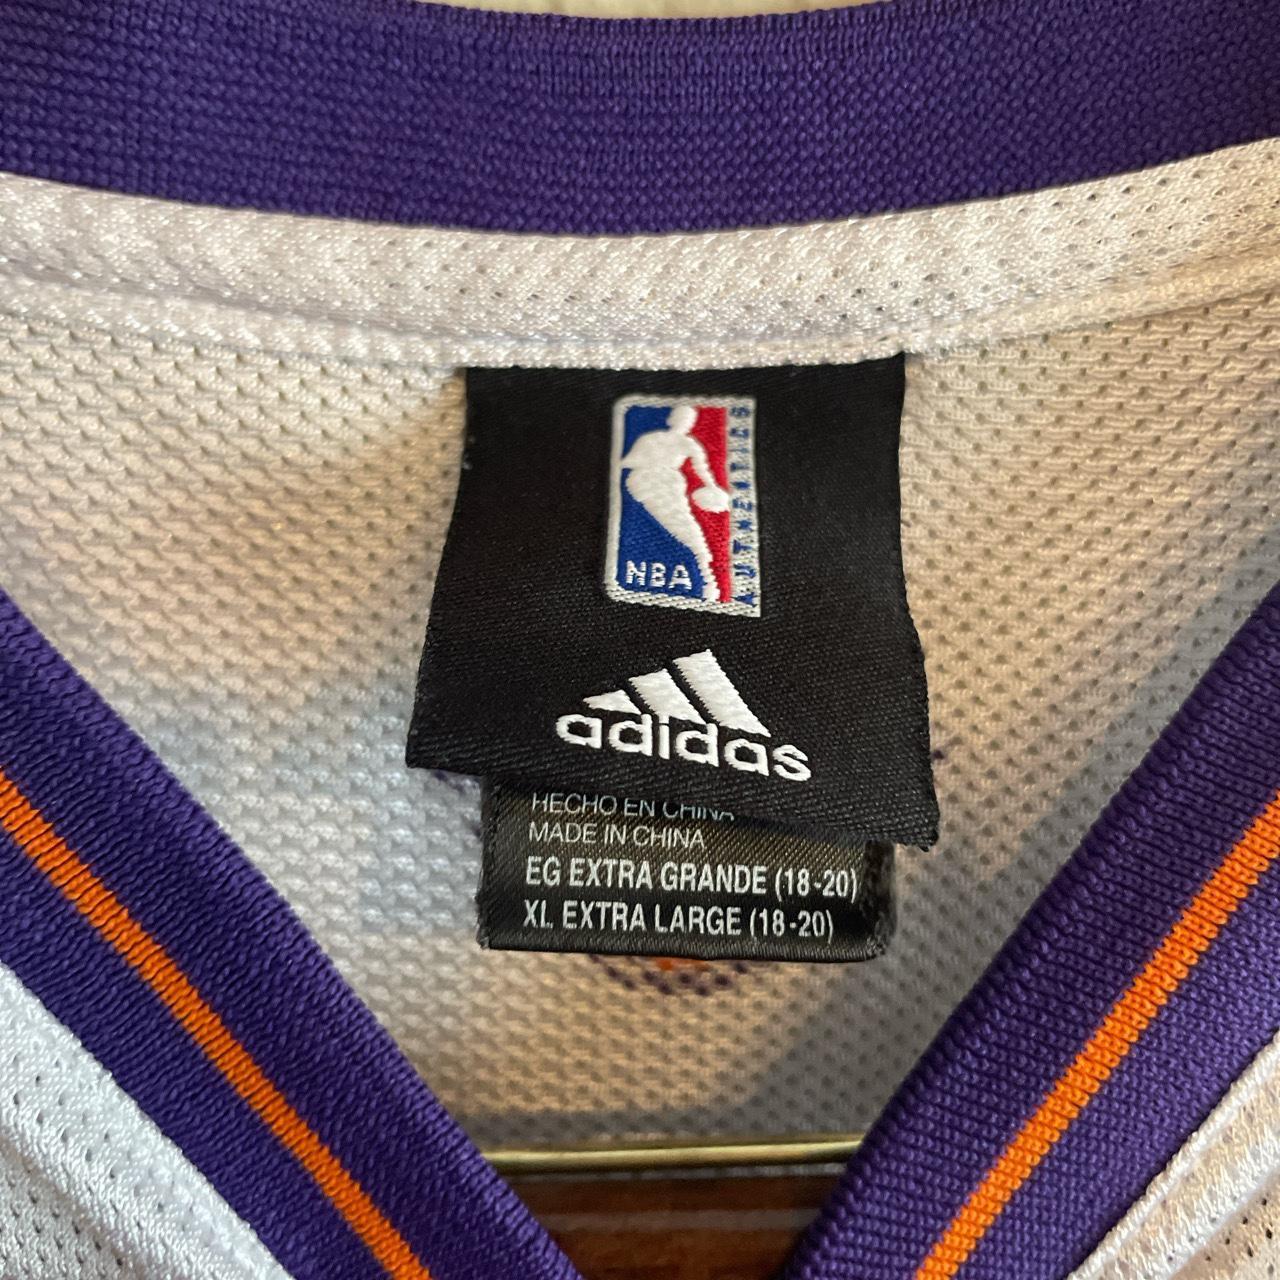 Adidas NBA Phoenix Suns # 13 Steve Nash Jersey SZ Youth XL 18-20